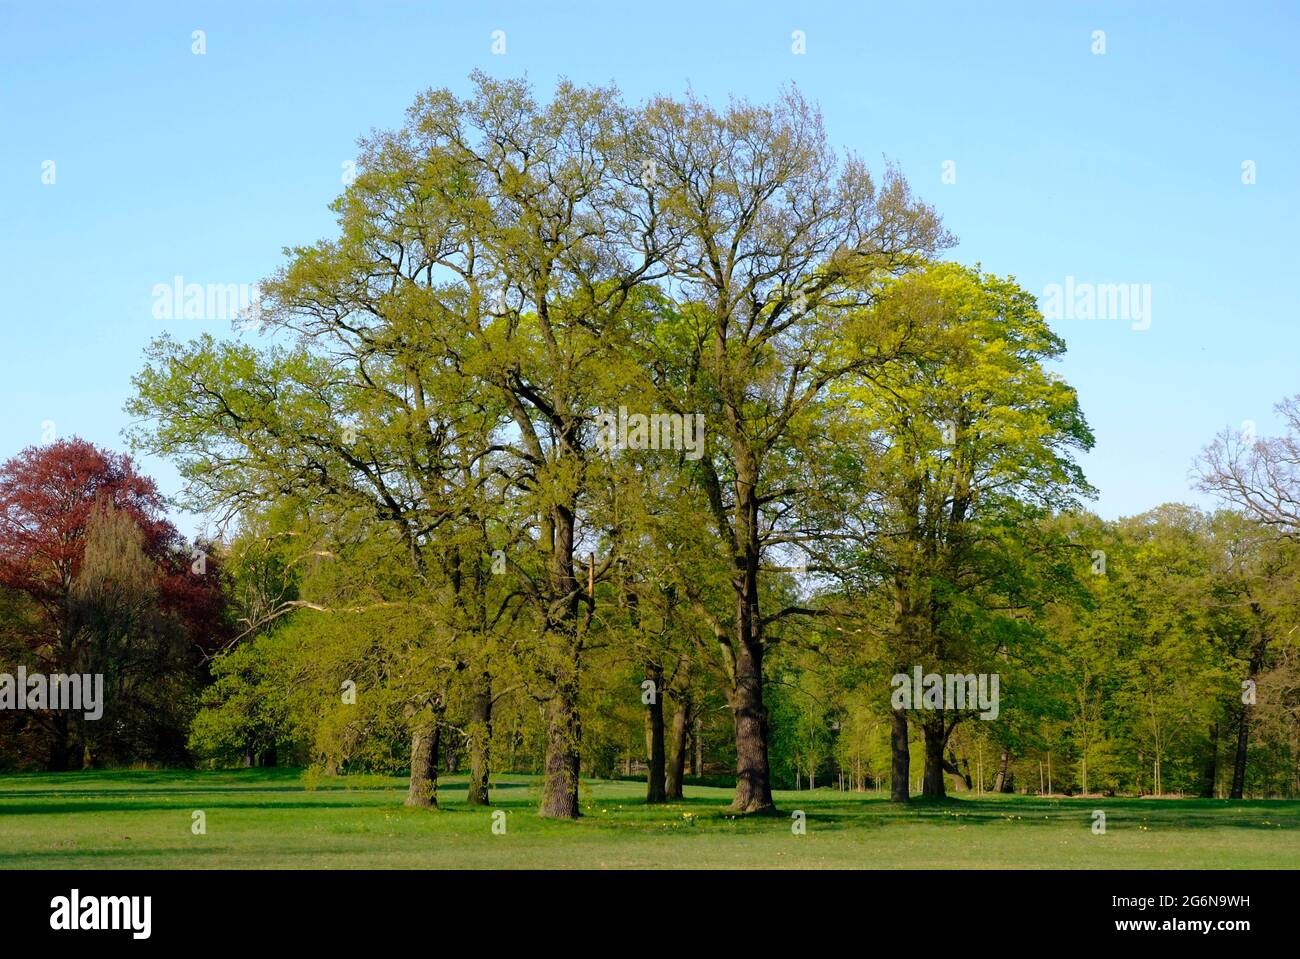 Park Sanssouci - landscape in springtime with oak trees Stock Photo